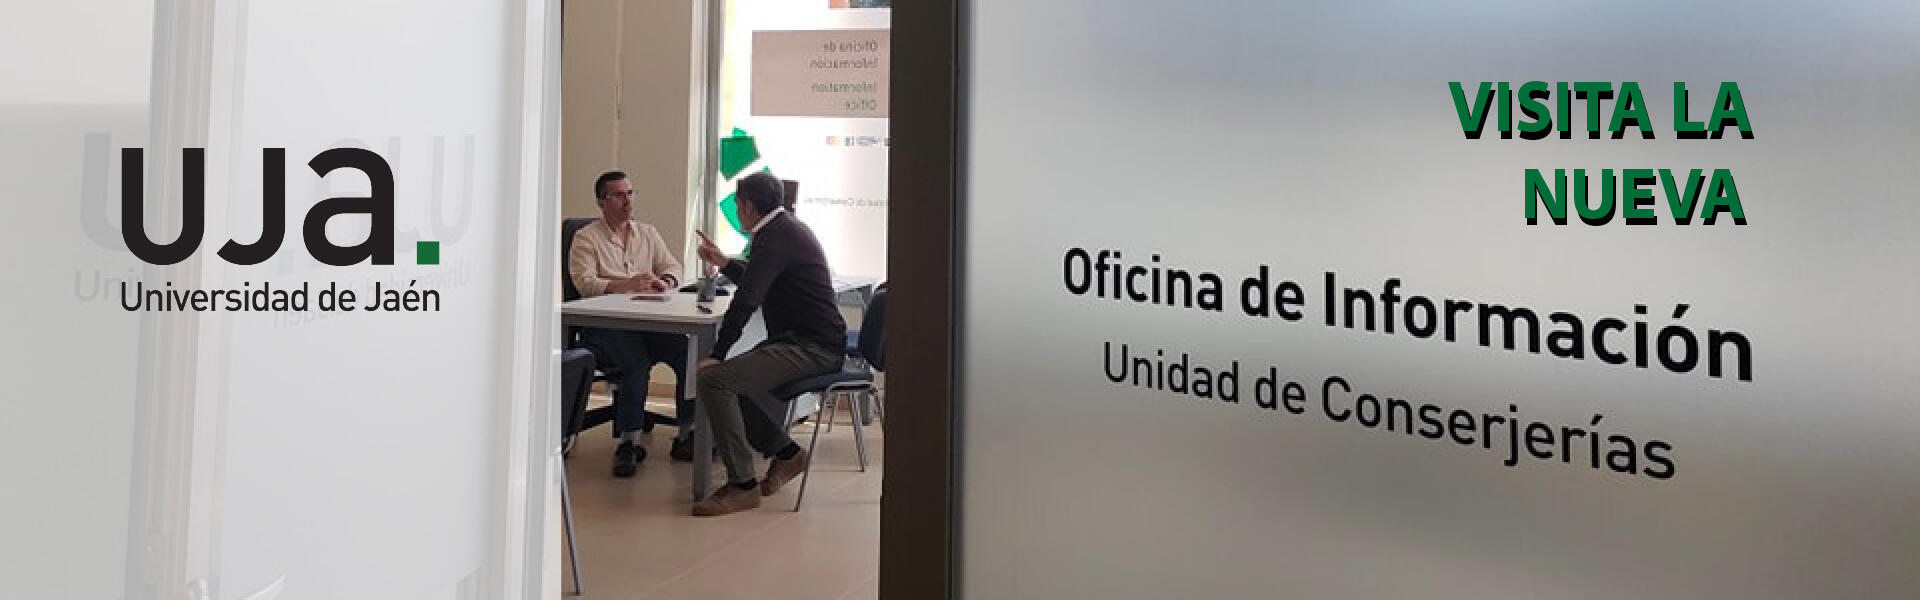 Nueva Oficina de Información de la Universidad de Jaén